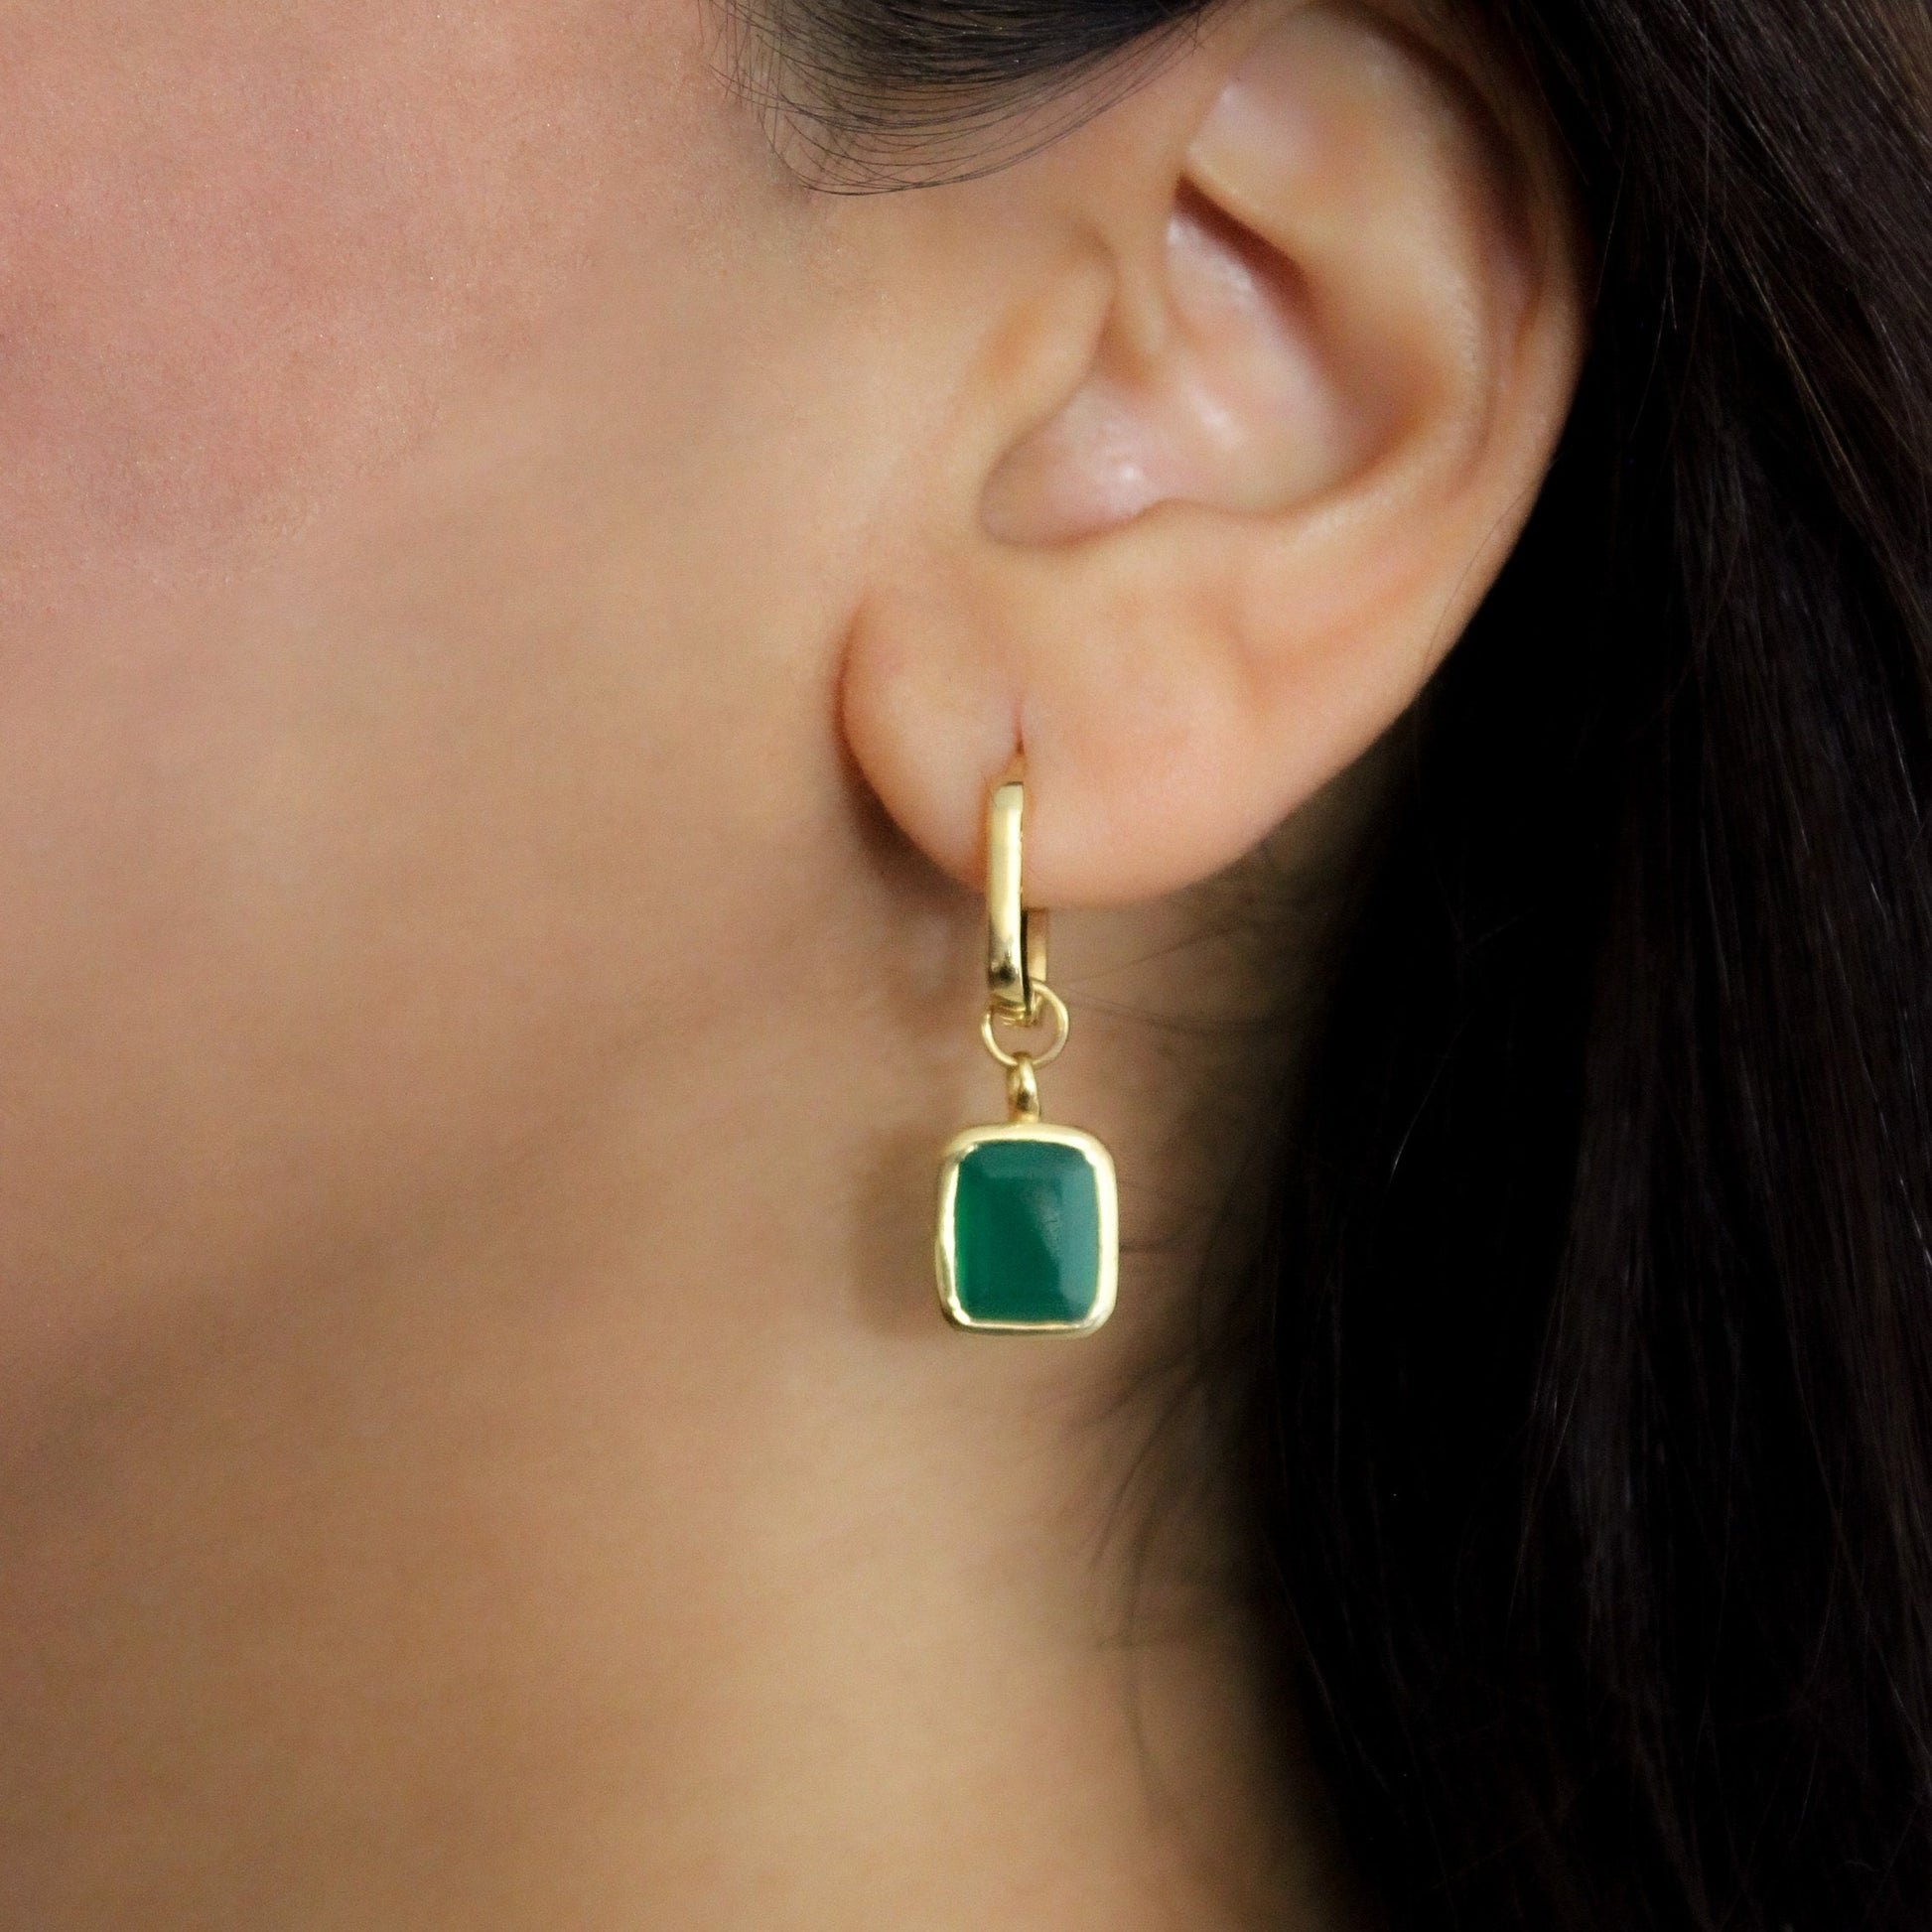 Green Onyx Earrings, Green Onyx Hoops, Gift Ideas for women